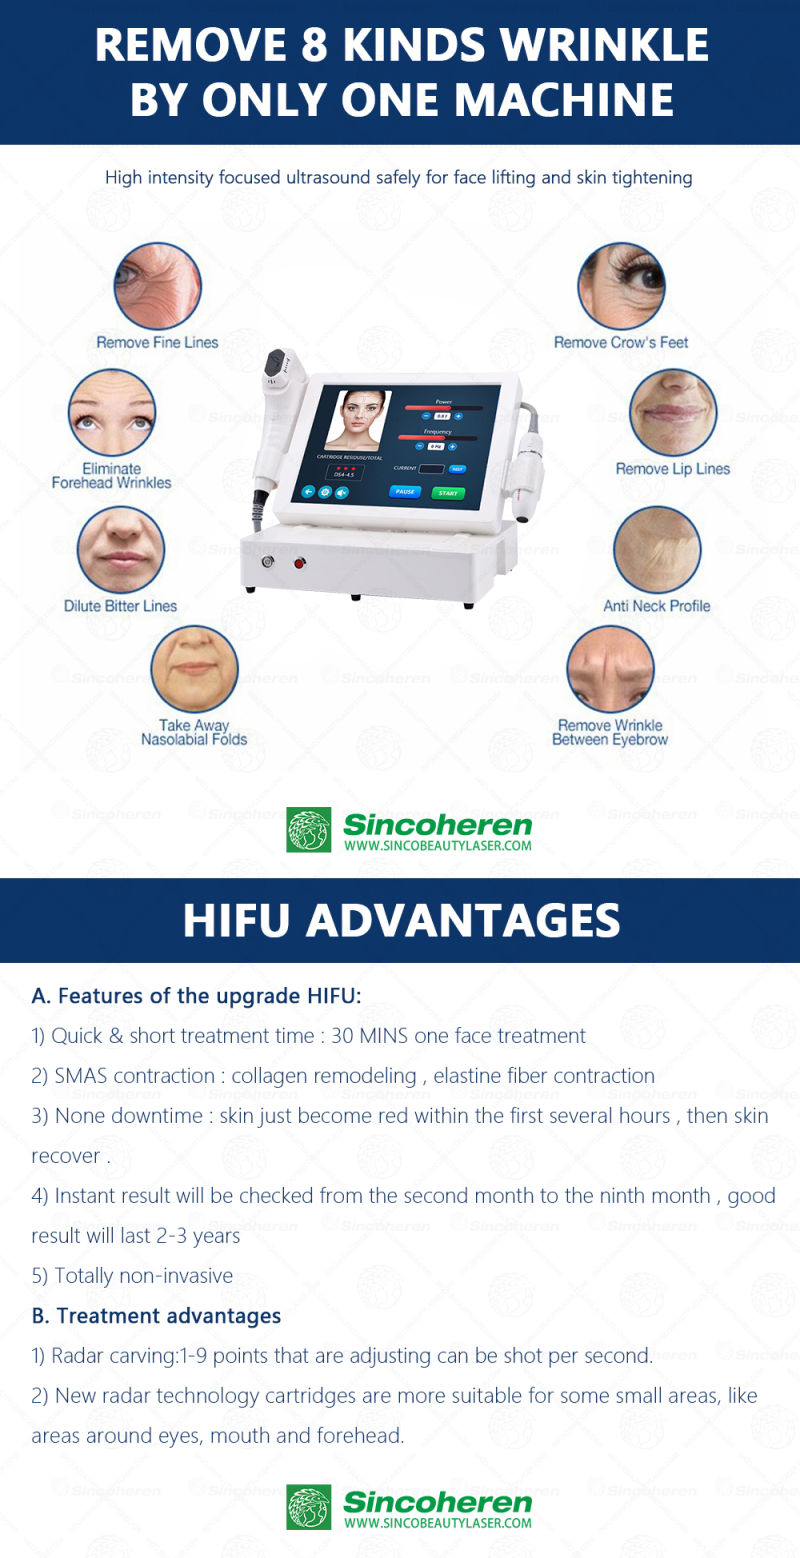 Ce Approved Face Lifting Machine 4D Hifu Machine